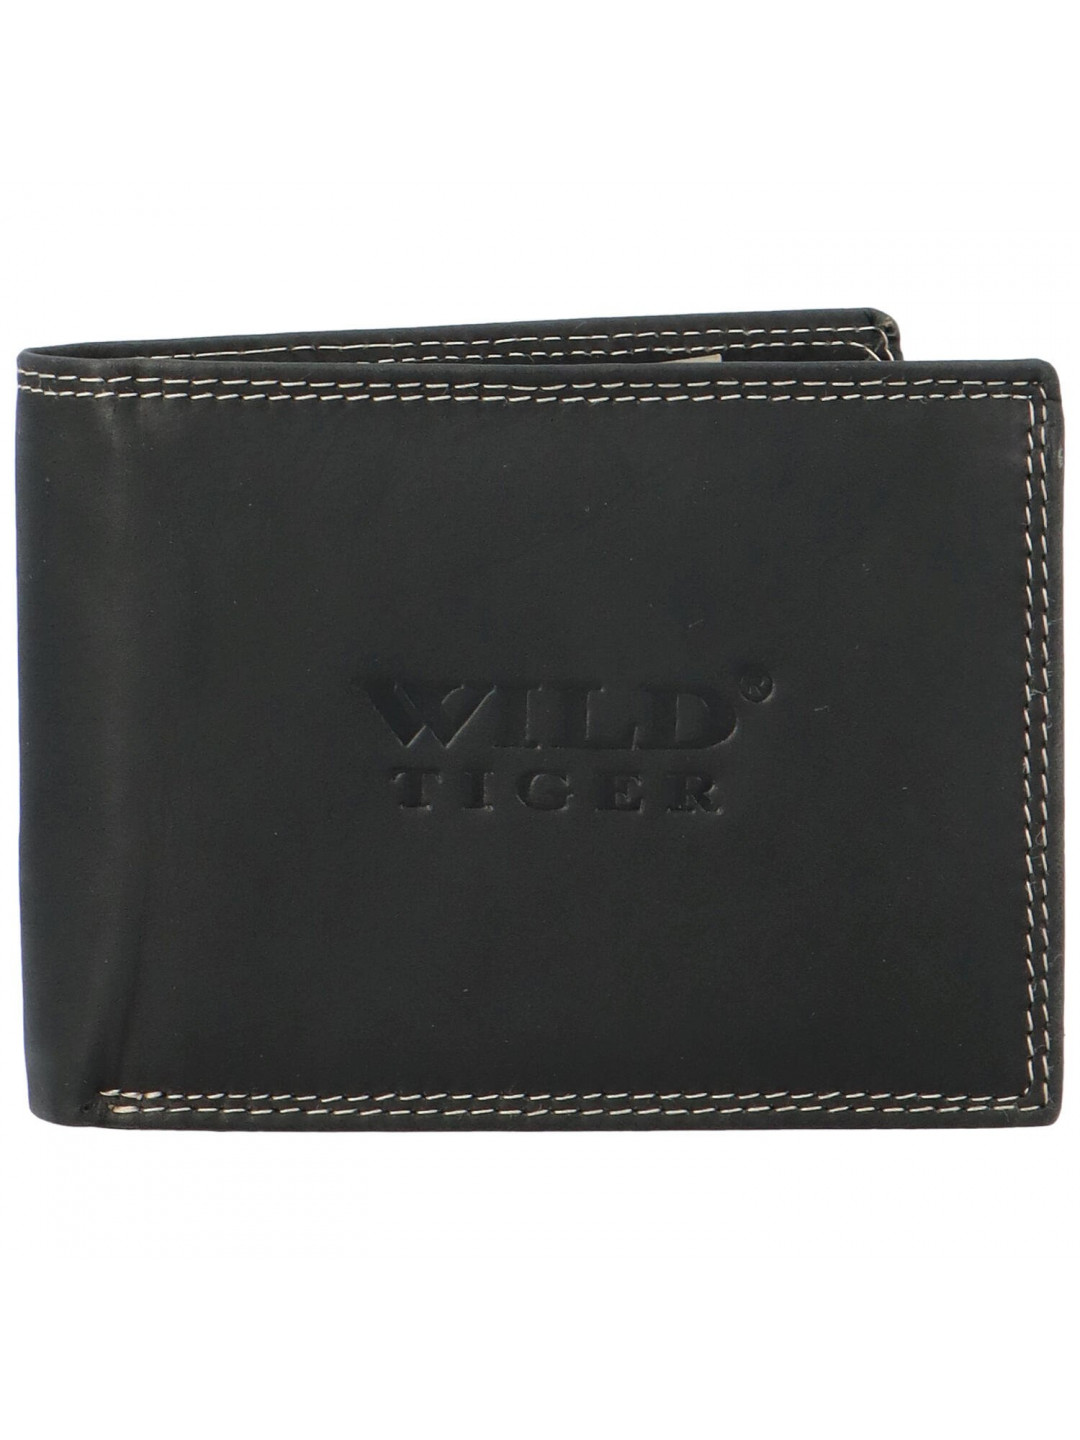 Pánská kožená peněženka černá – Wild Tiger Leonard